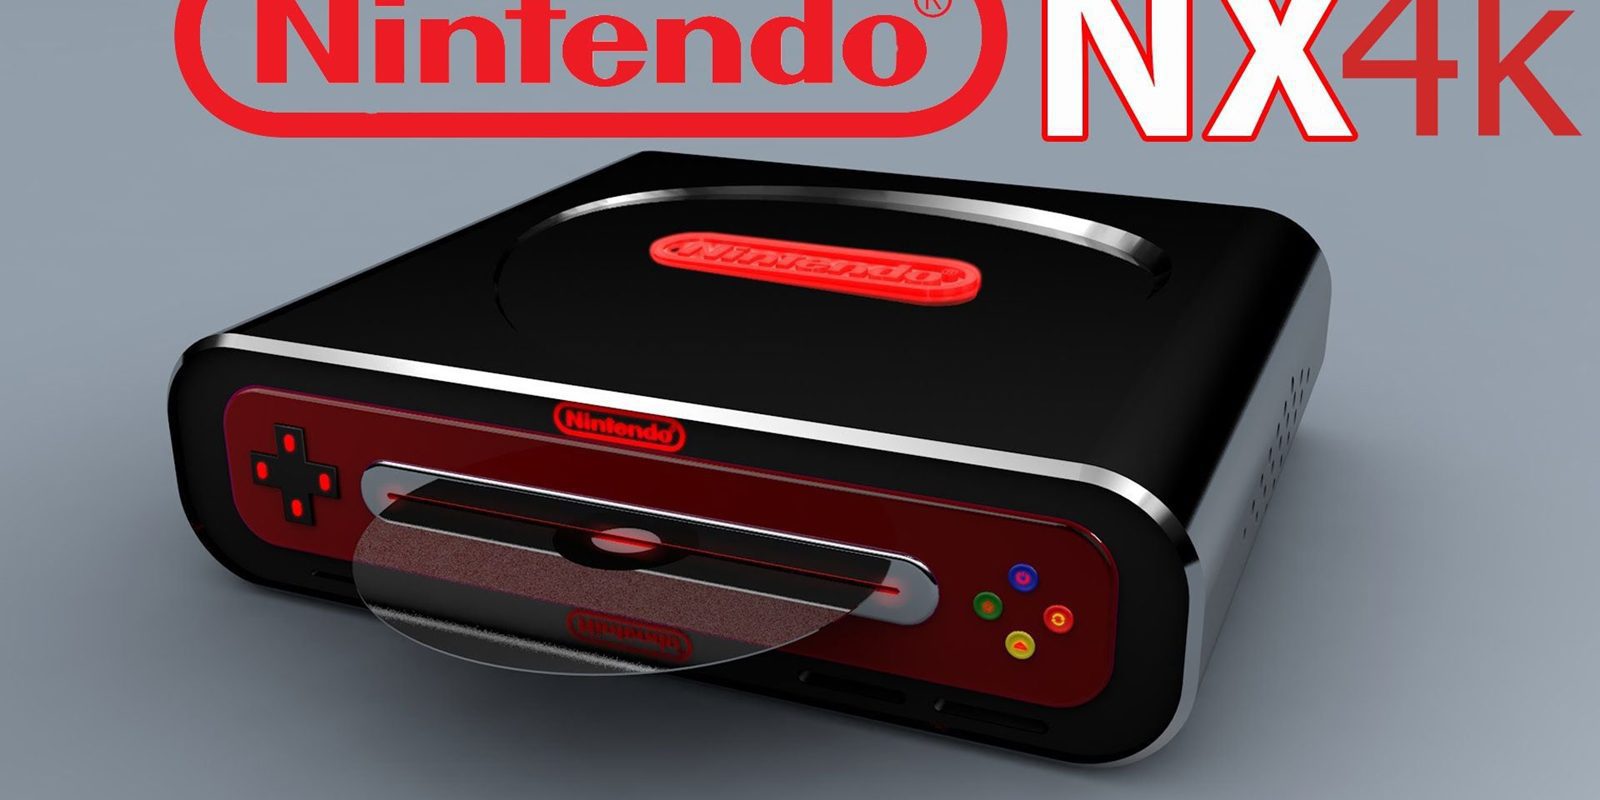 Nintendo NX generaría 7.5 mil millones de dólares durante sus primeros 2 años en USA